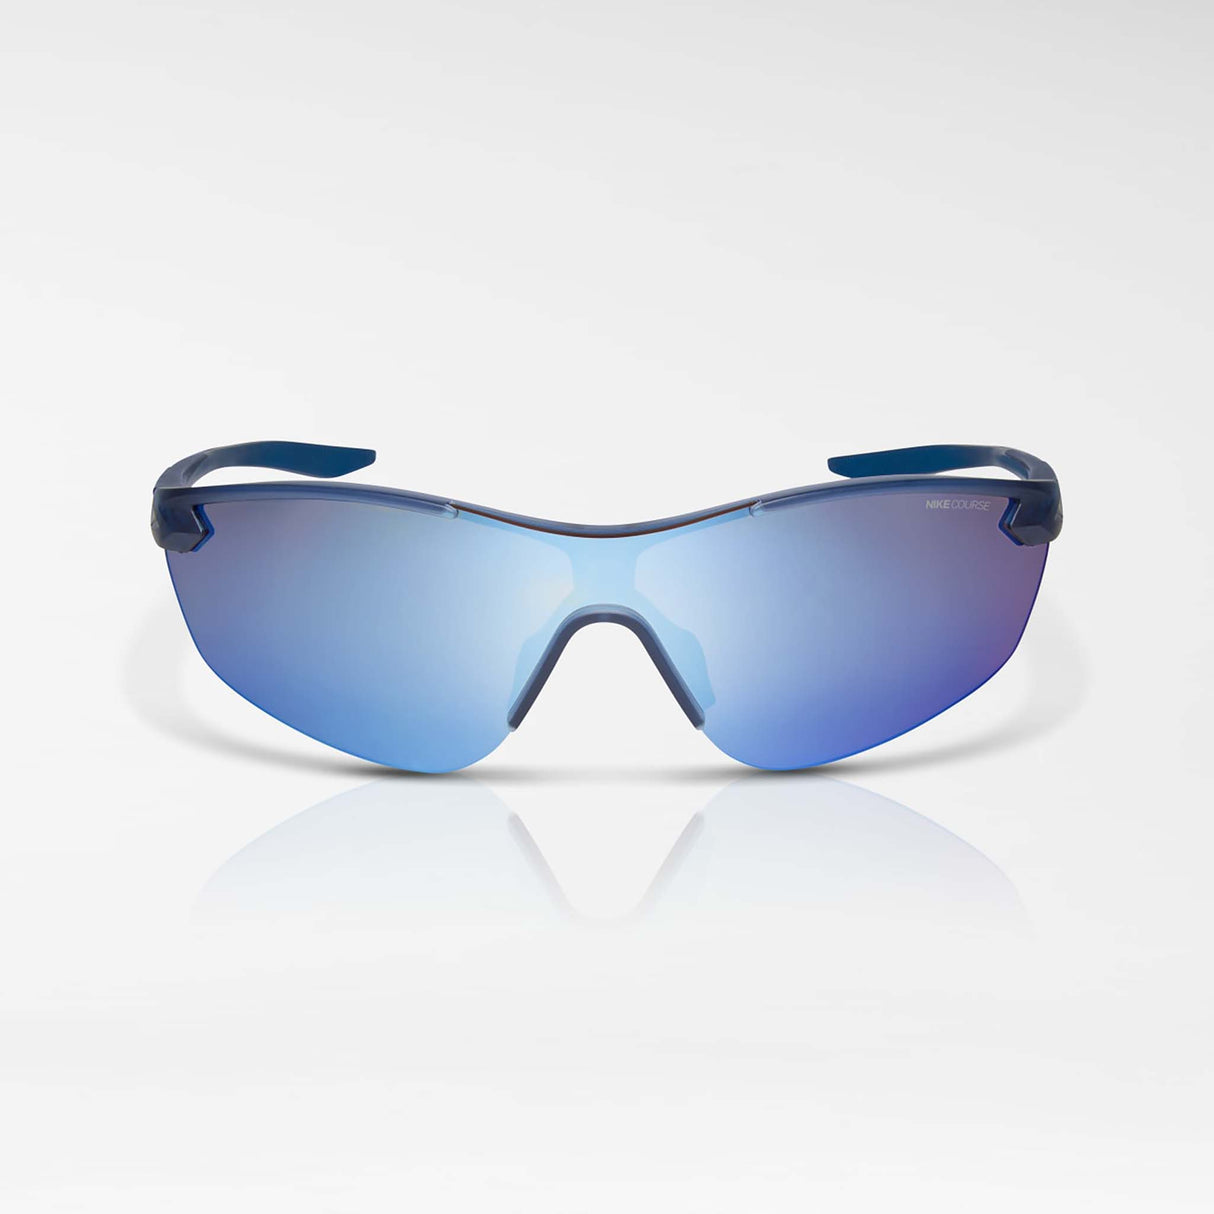 Nike Victory Elite lunettes de soleil sport marine mystique mat bleu miroir face